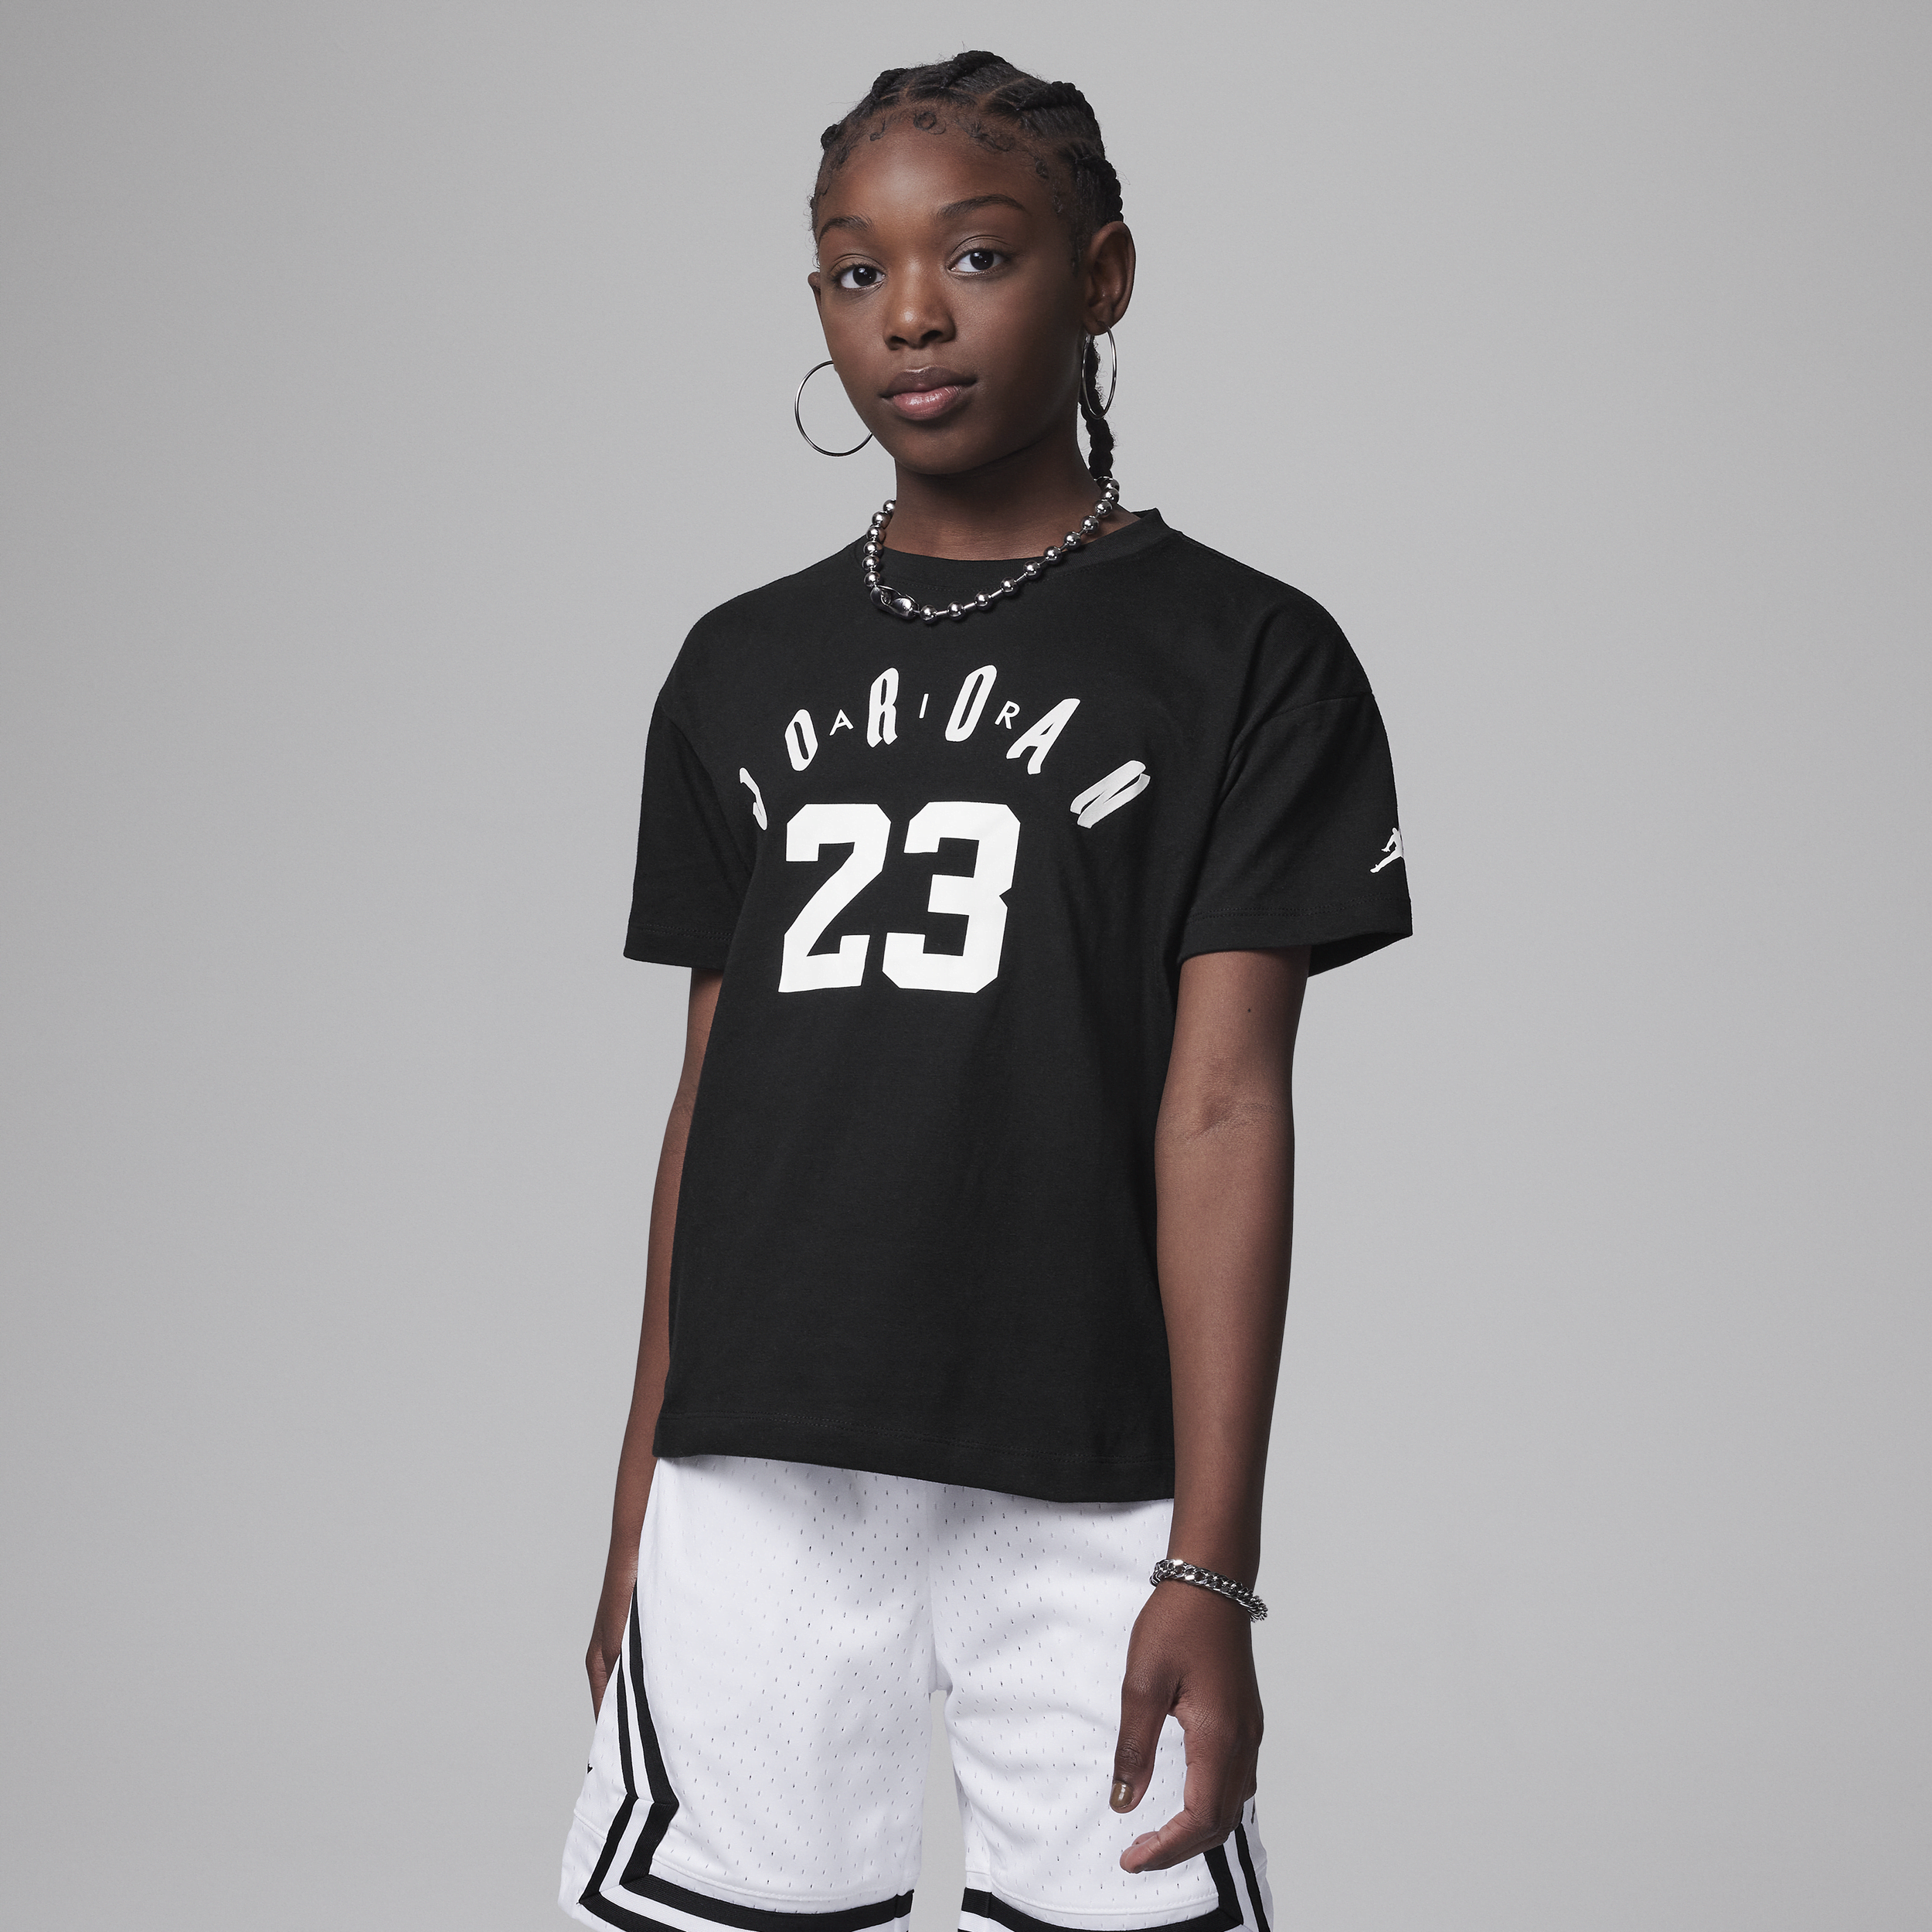 Jordan 23 Soft Touch Tee T-shirt voor kids - Zwart